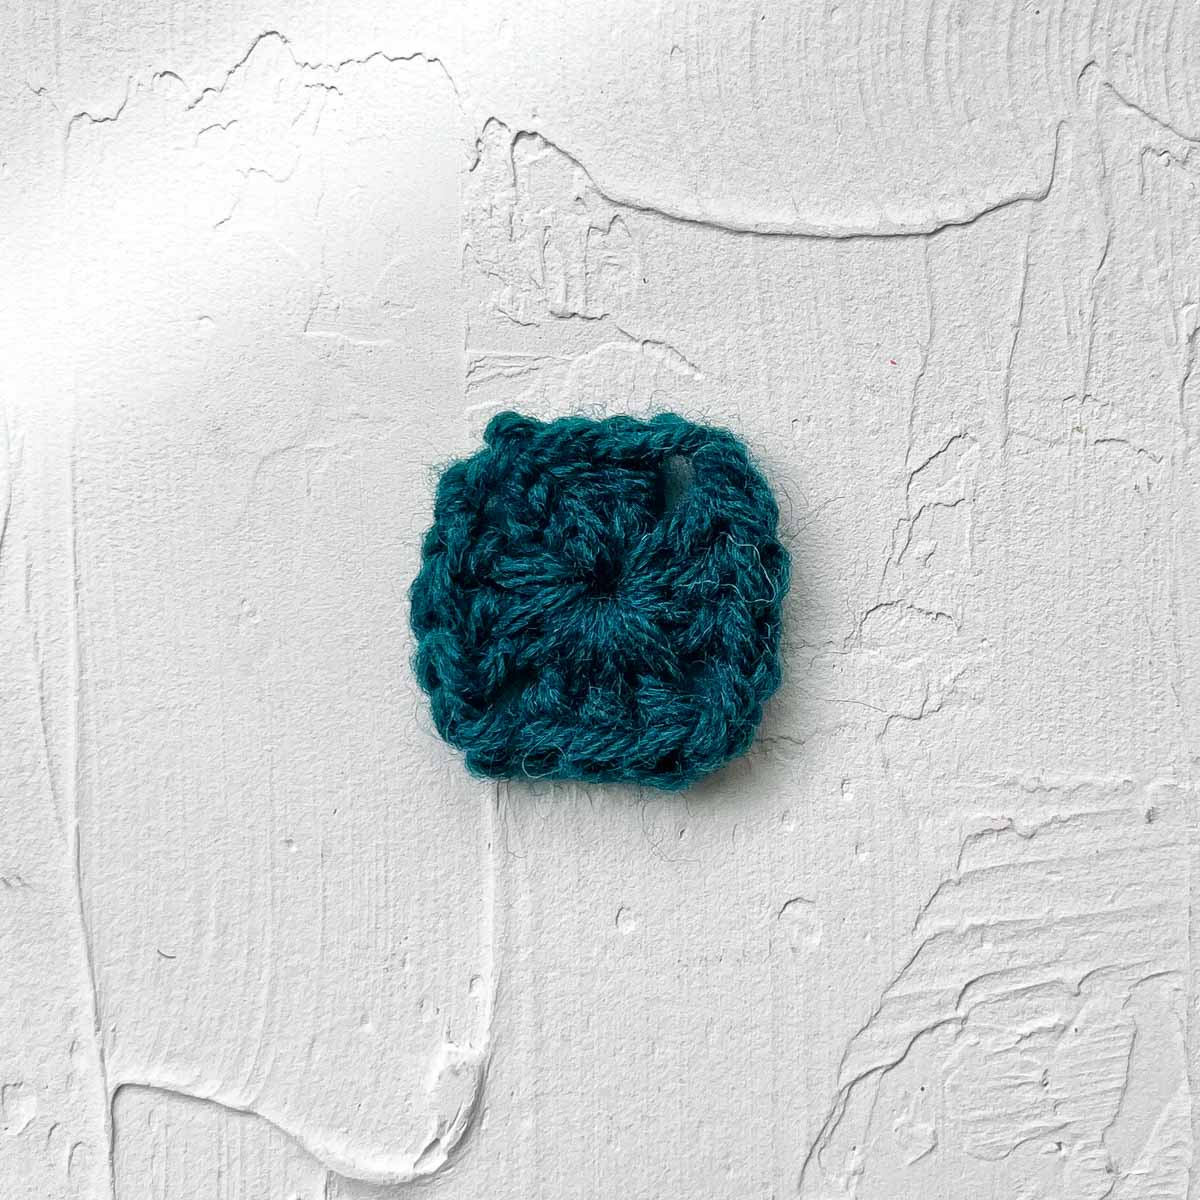 Granny square tutorial round 1: 12 double crochet stitches.